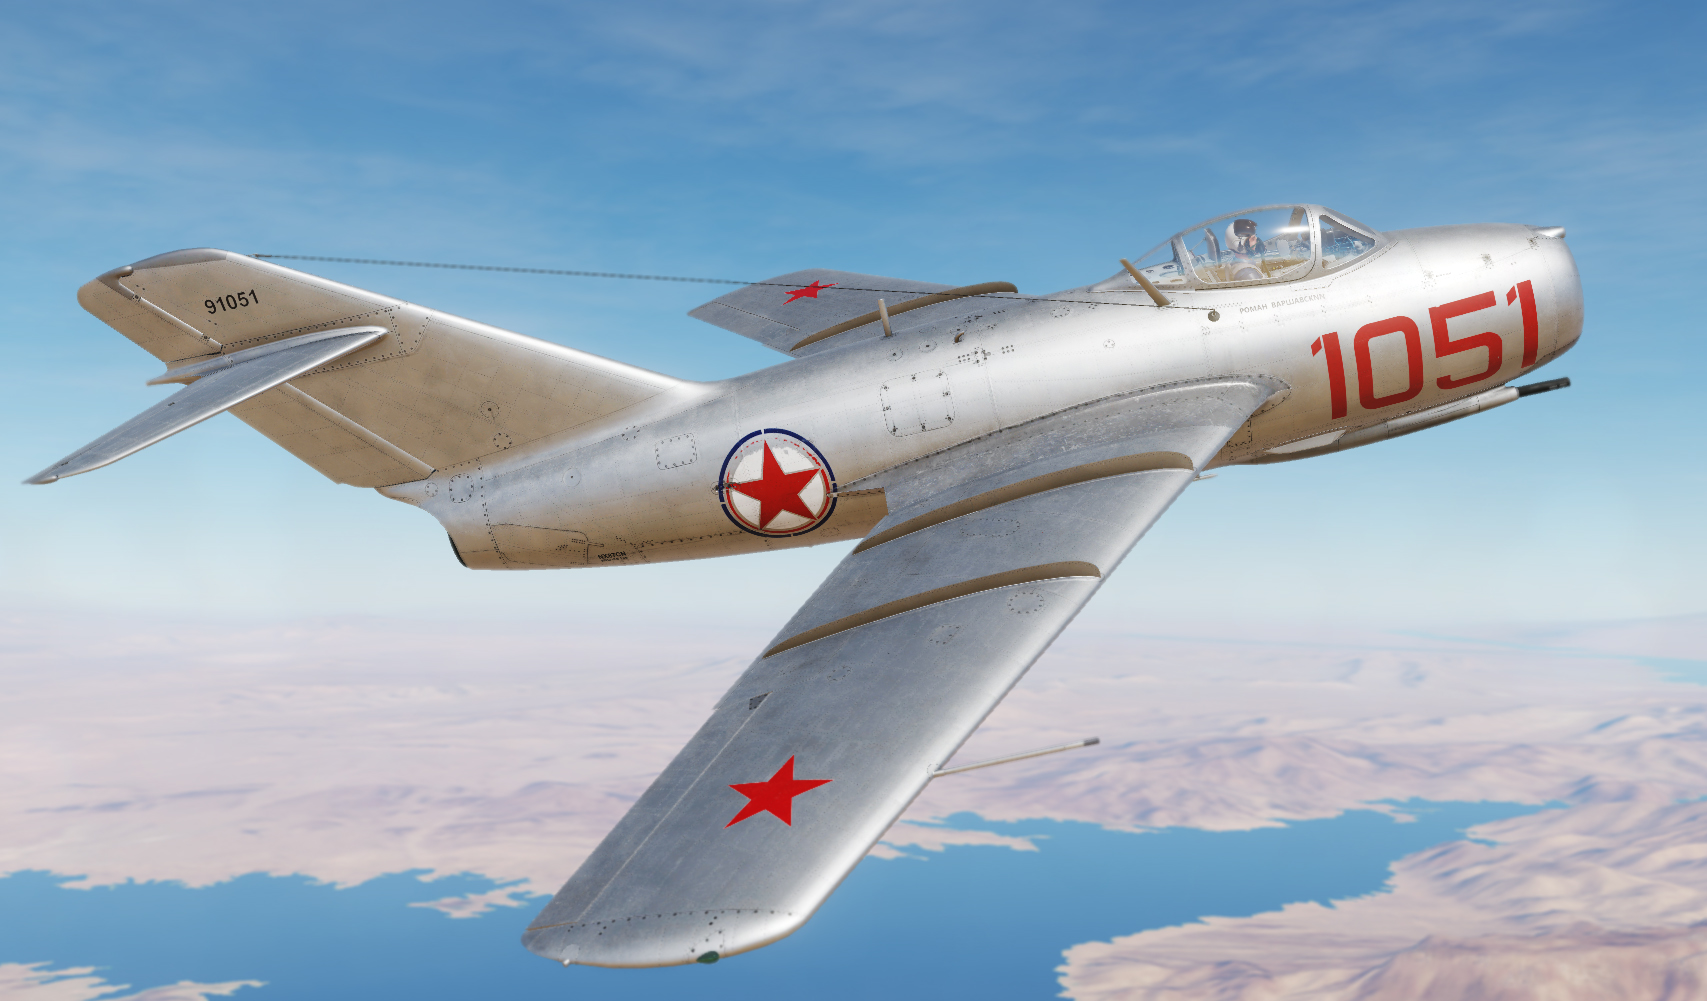 Planes of Fame Museum MiG-15bis "1051" (v1.0)